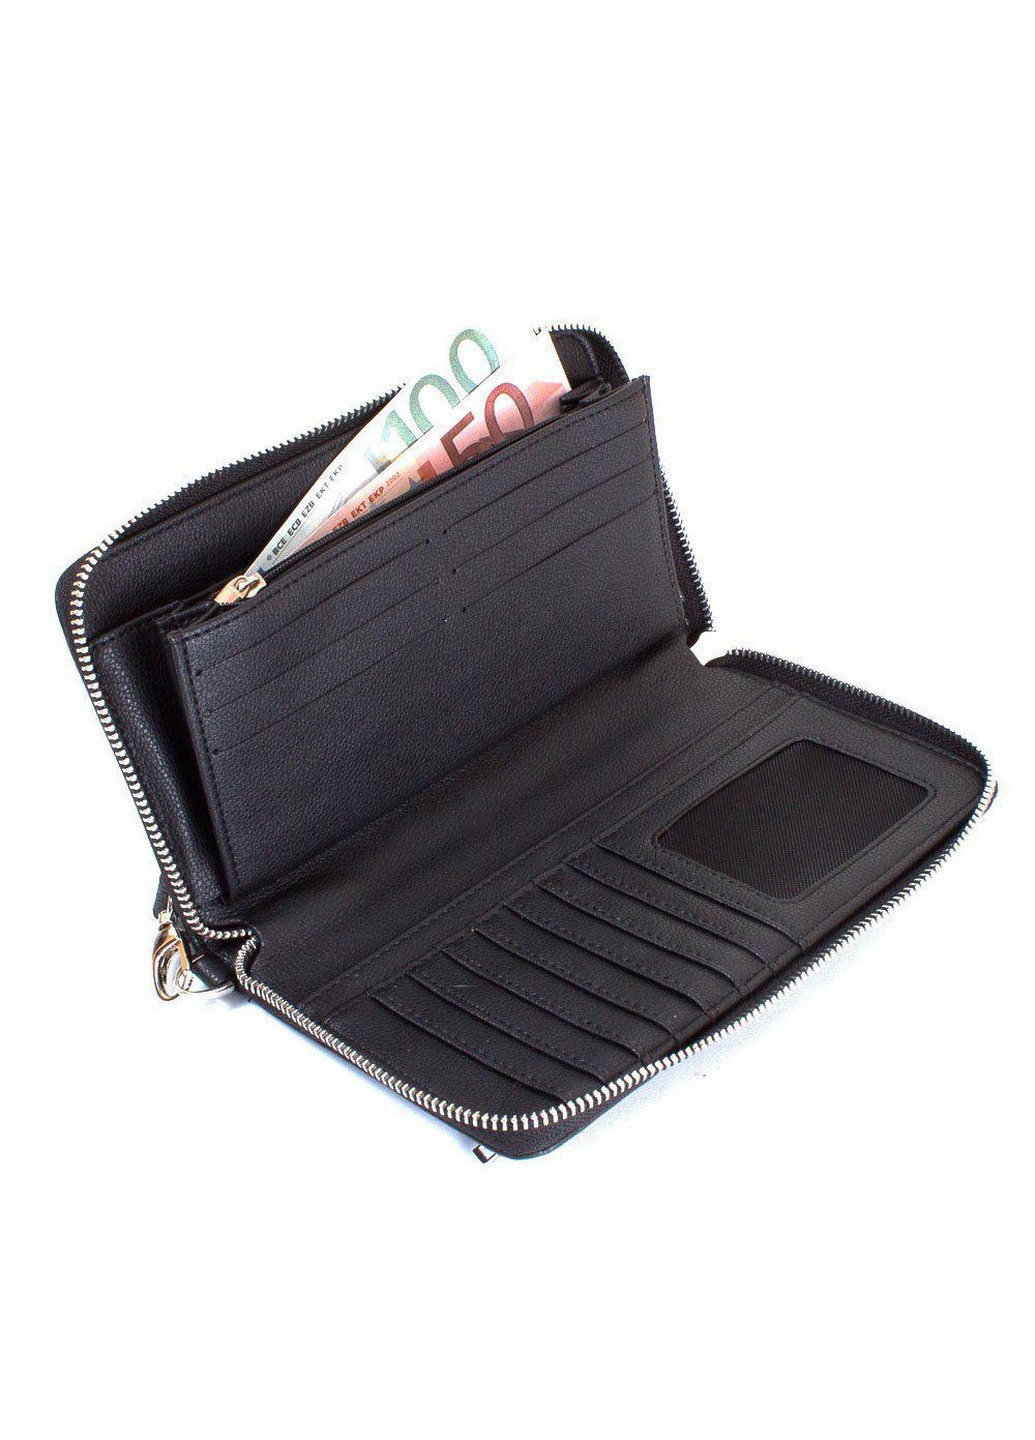 Чоловіча борсетка-гаманець 21х12х2, 5 см Bonis (206676390)